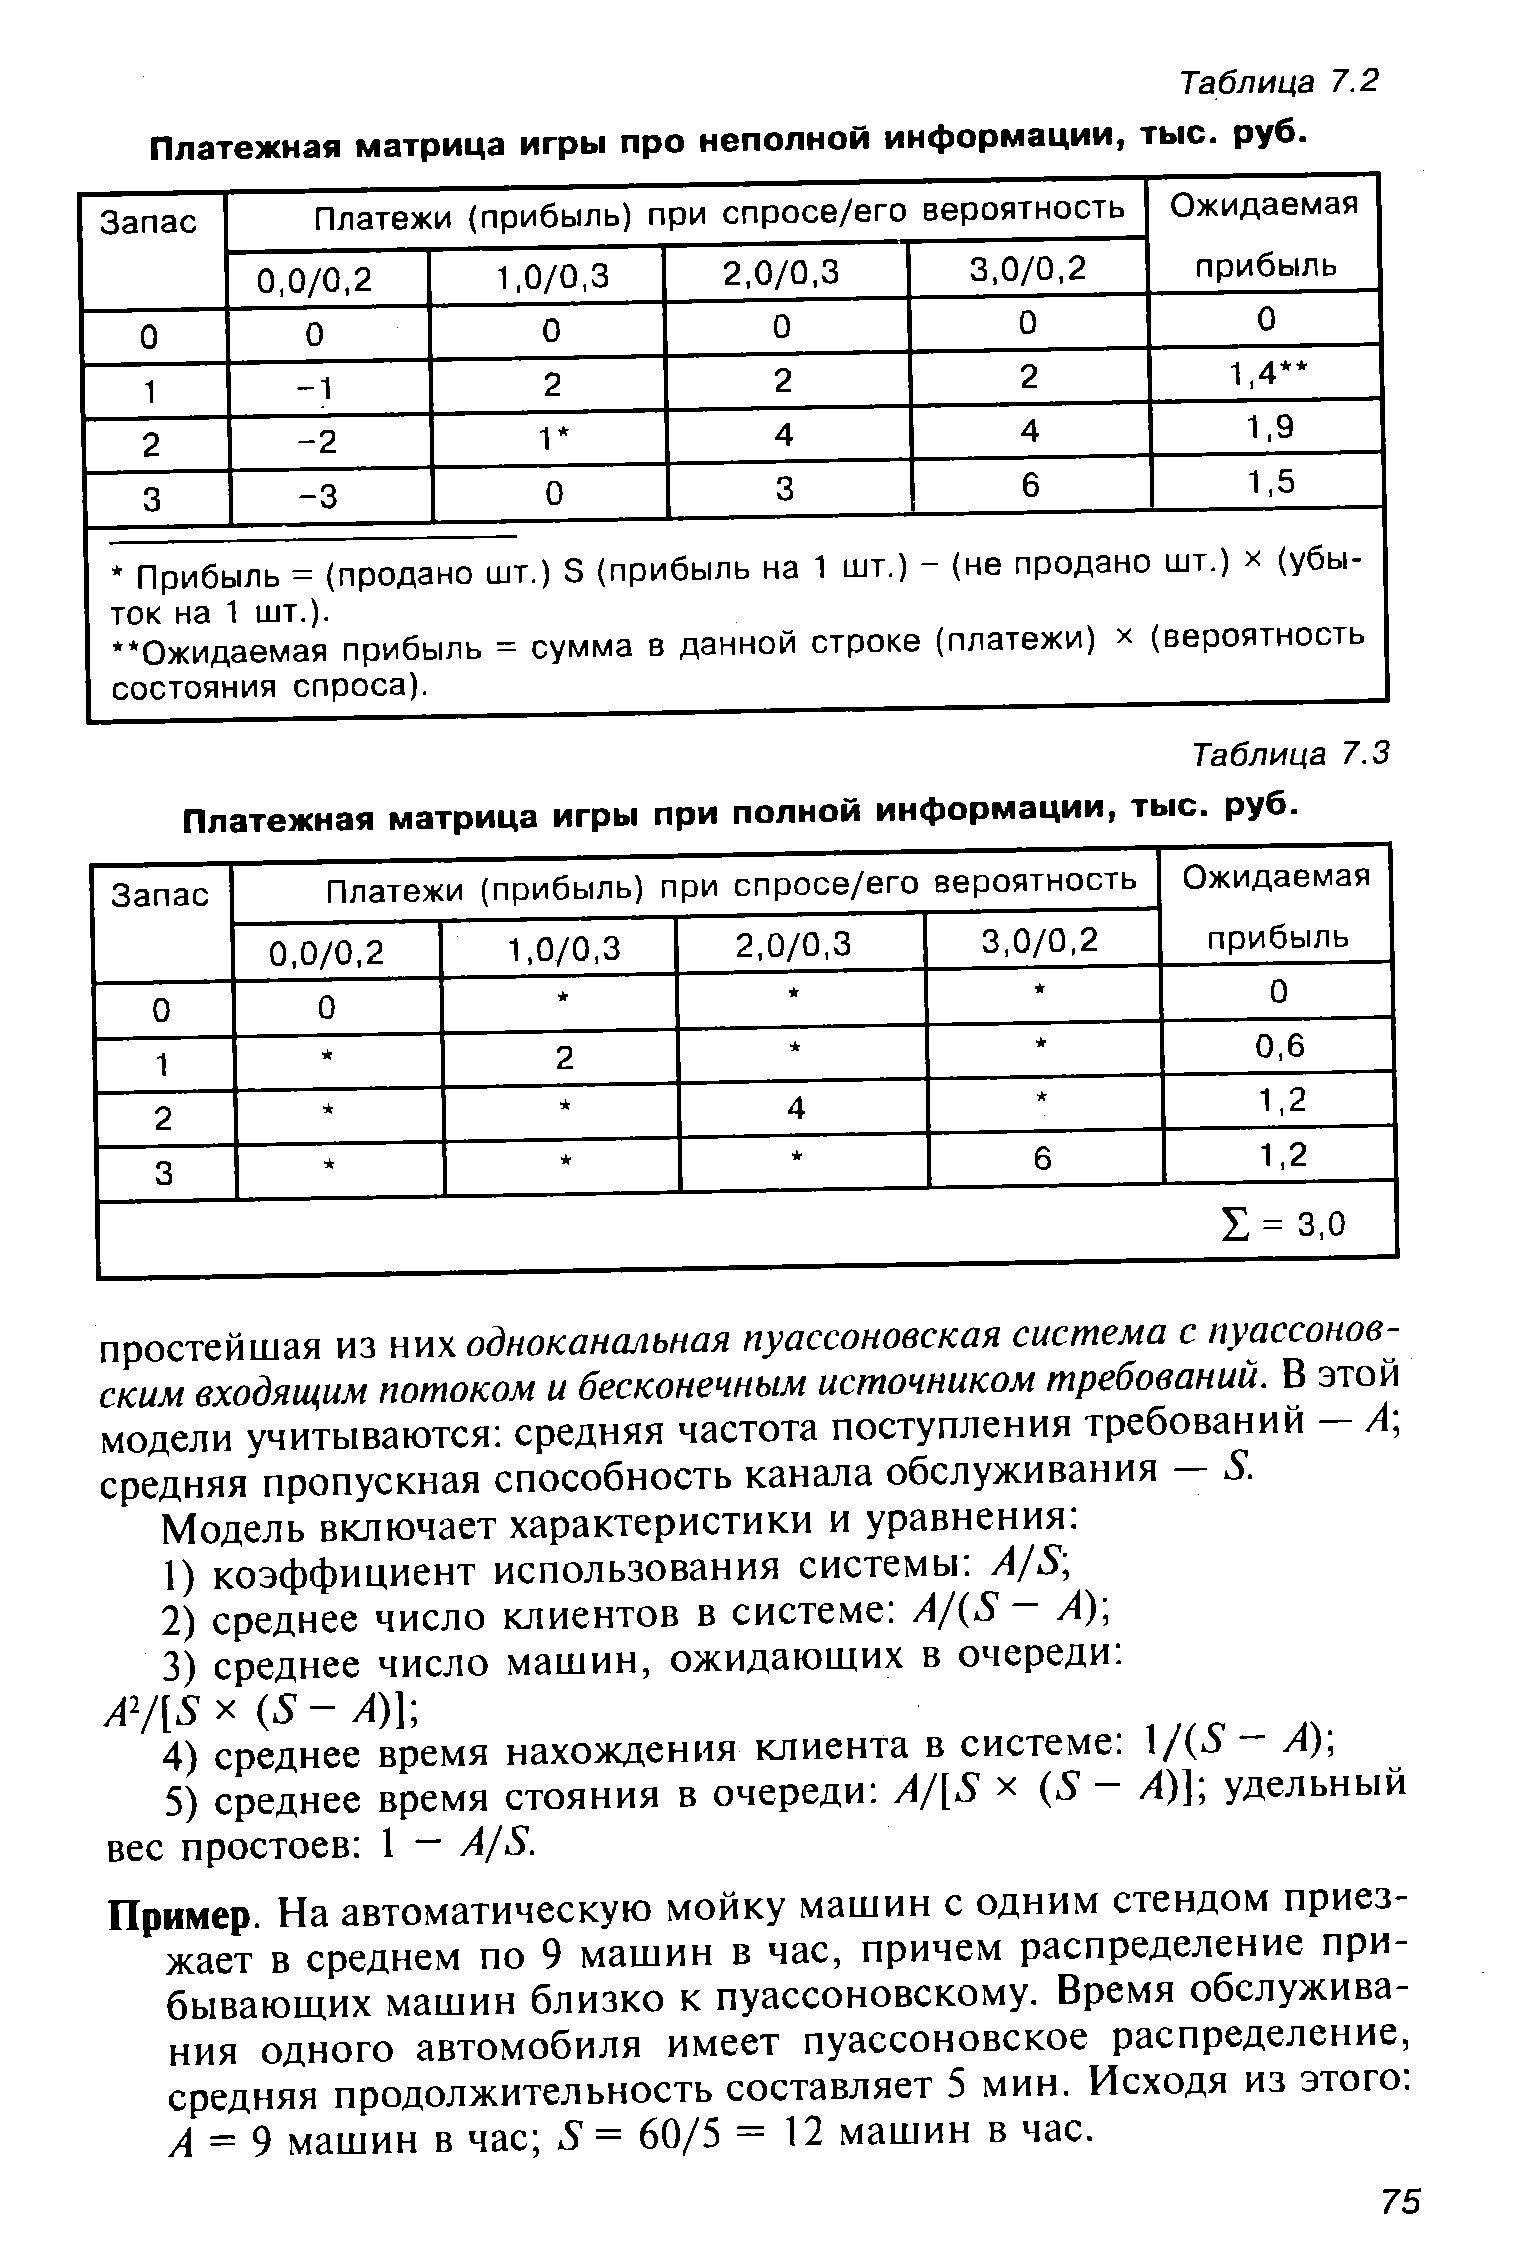 Таблица 7.3 <a href="/info/20907">Платежная матрица</a> игры при полной информации, тыс. руб.
